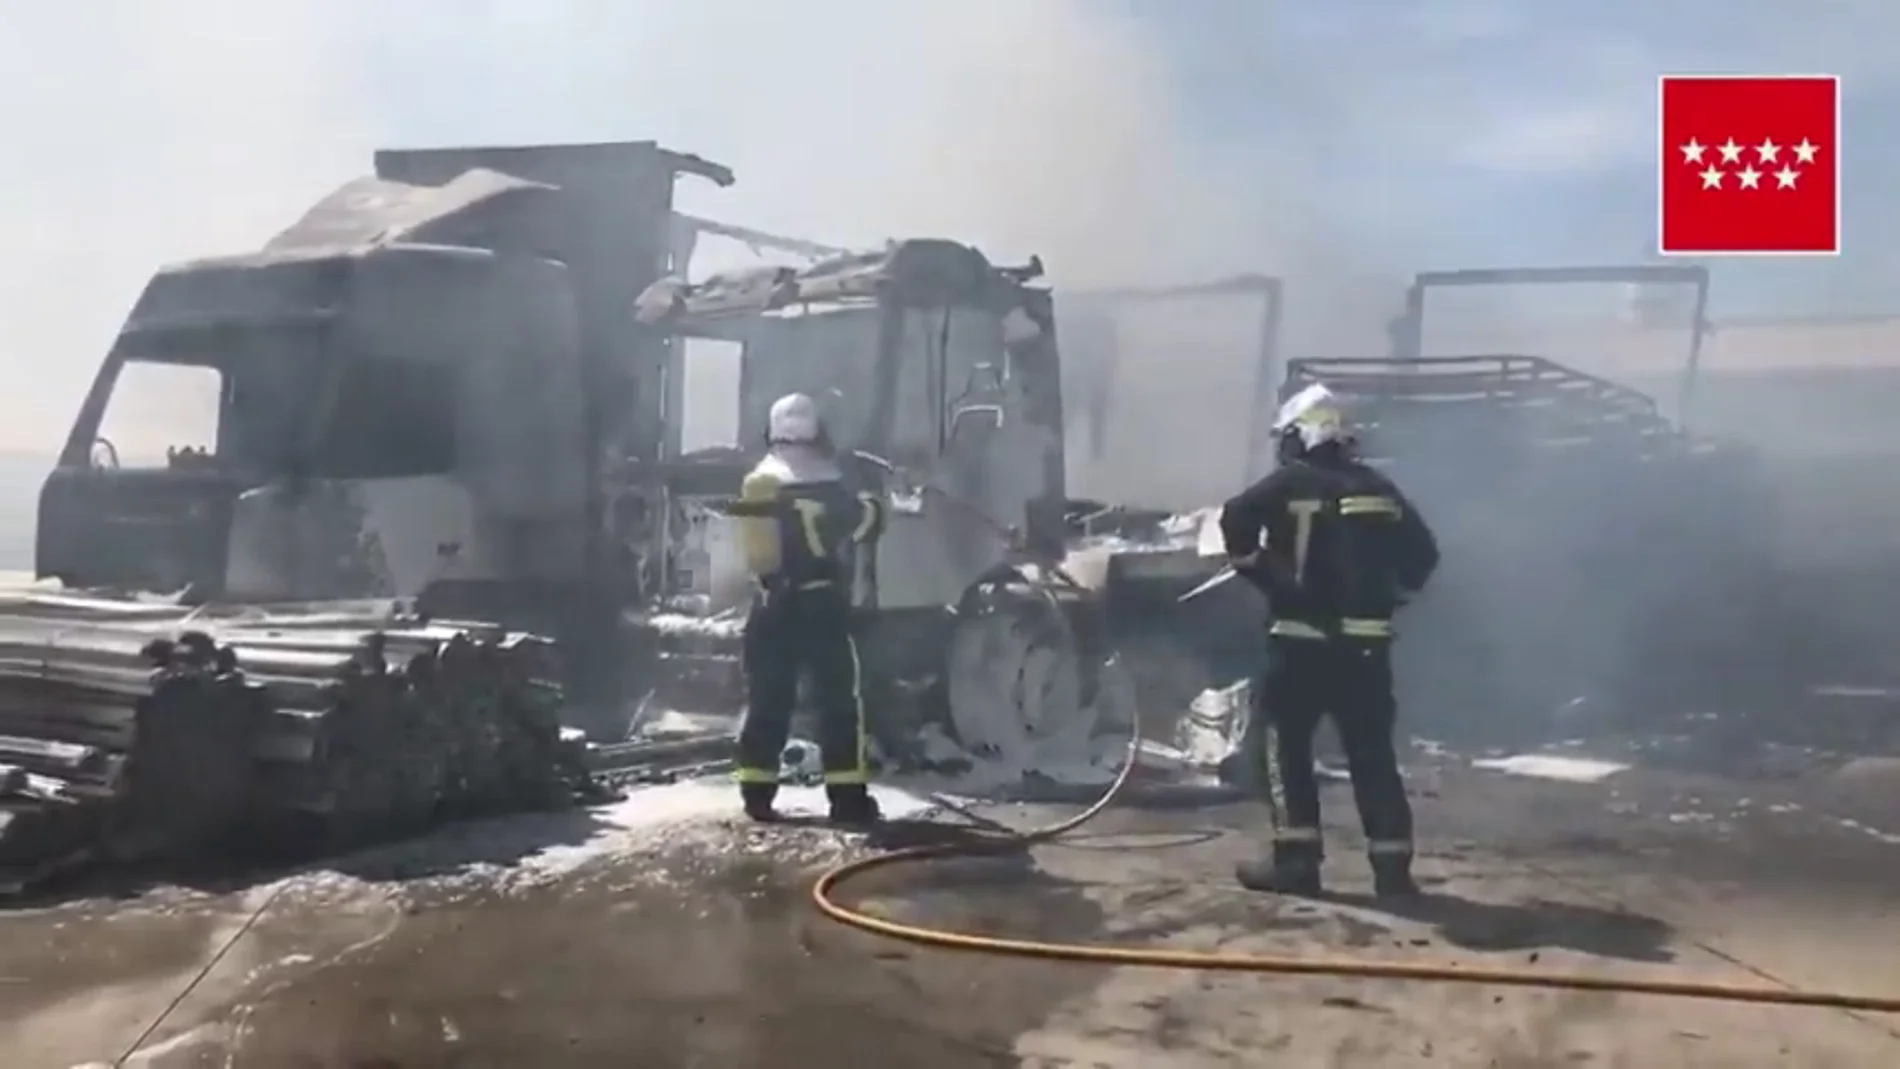 Imagen de vehículos calcinados tras un incendio en un polígono en Loeches, Madrid